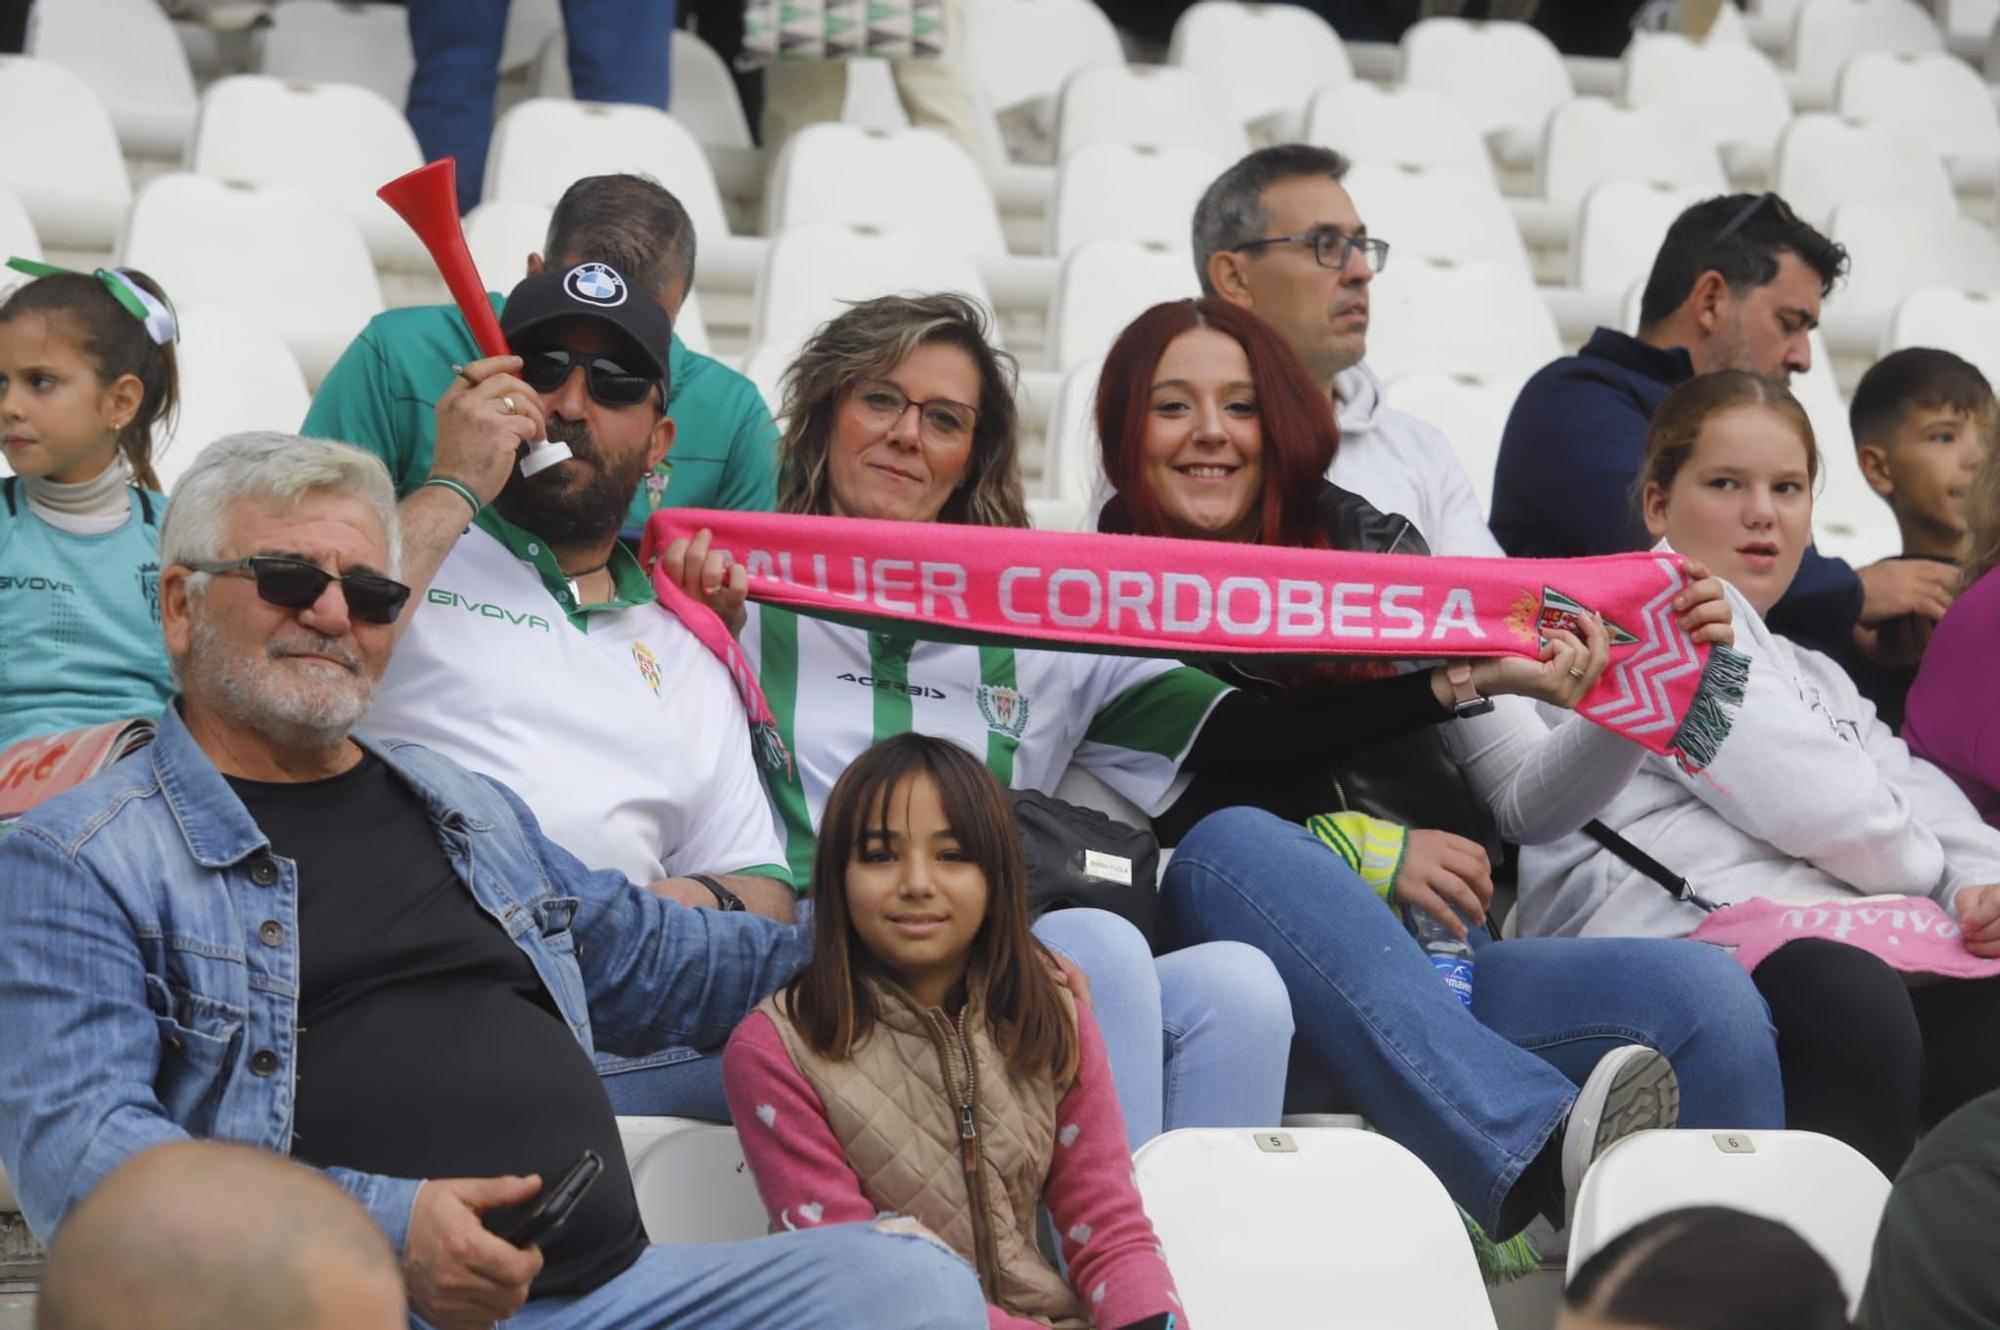 Córdoba CF - AD Ceuta : las imágenes de la afición en El Arcángel